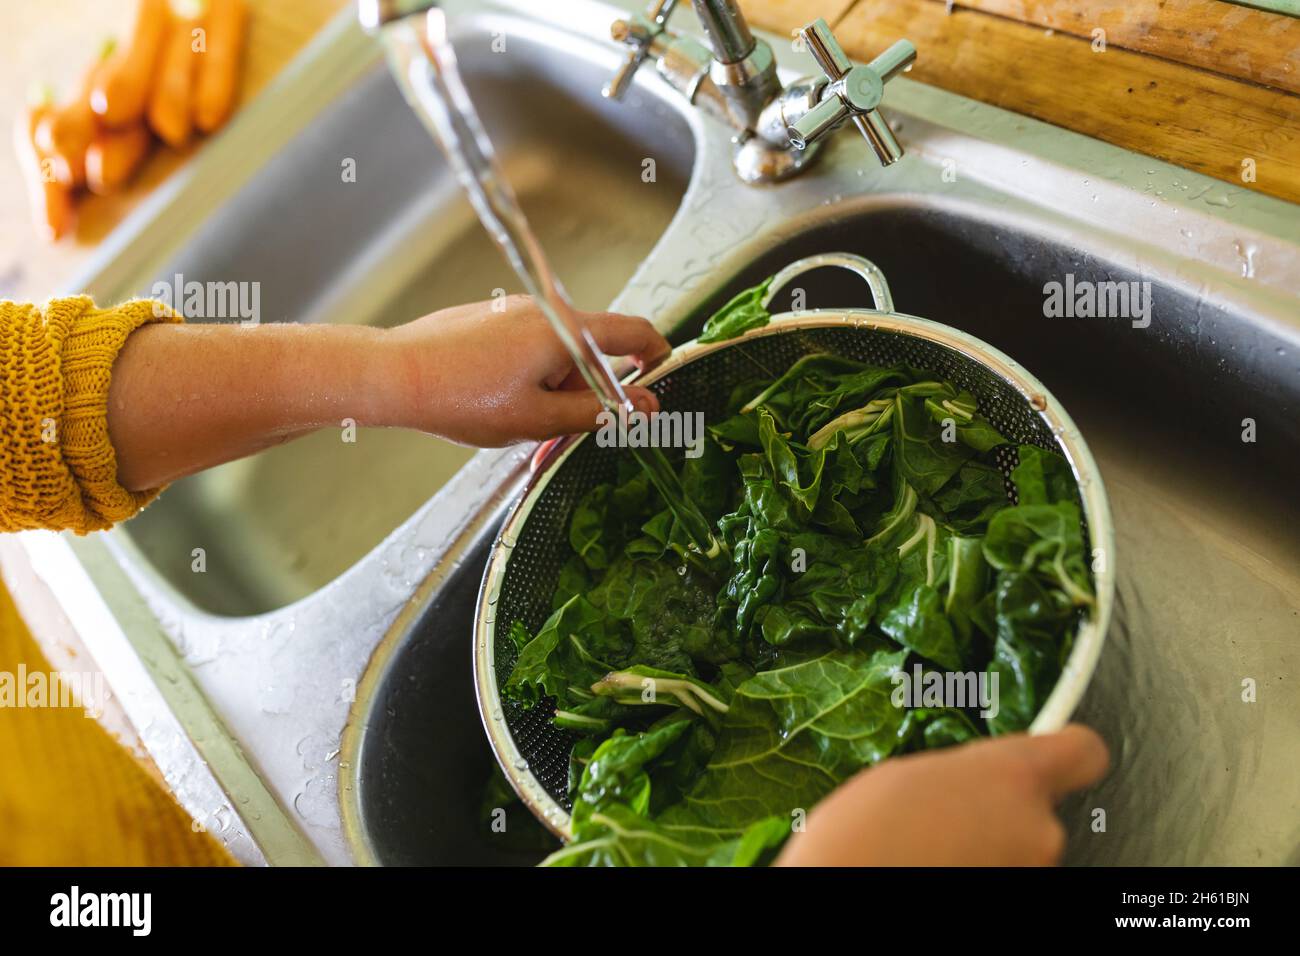 Hände einer jungen Frau, die grünes Blattgemüse im Sieb unter Wasser im Spülbecken waschen Stockfoto